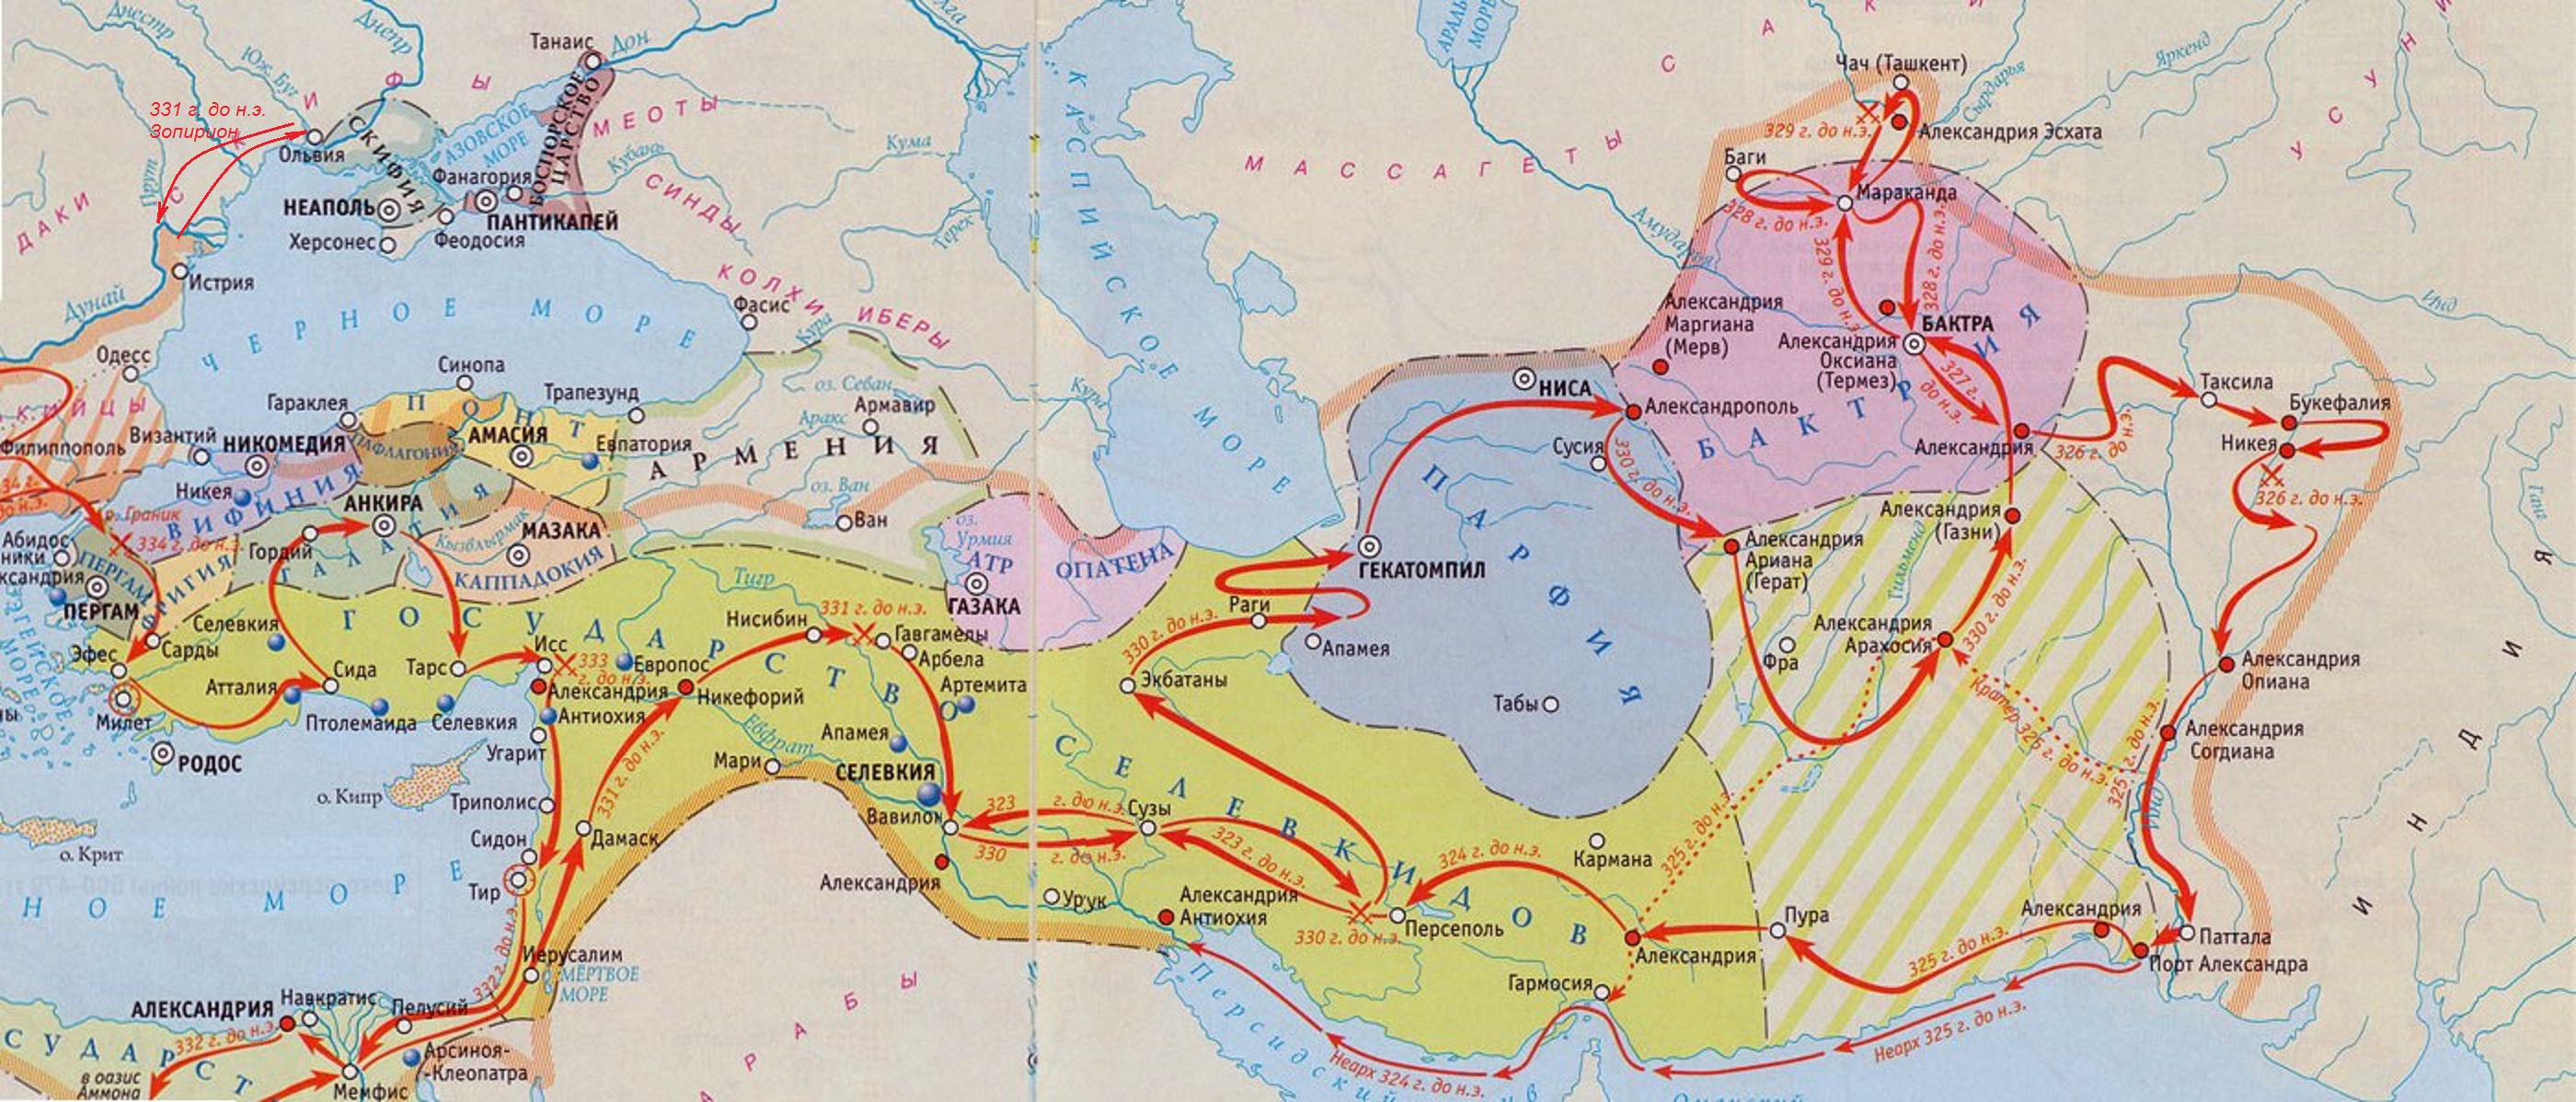 Походы Александра Македонского и его завоевания